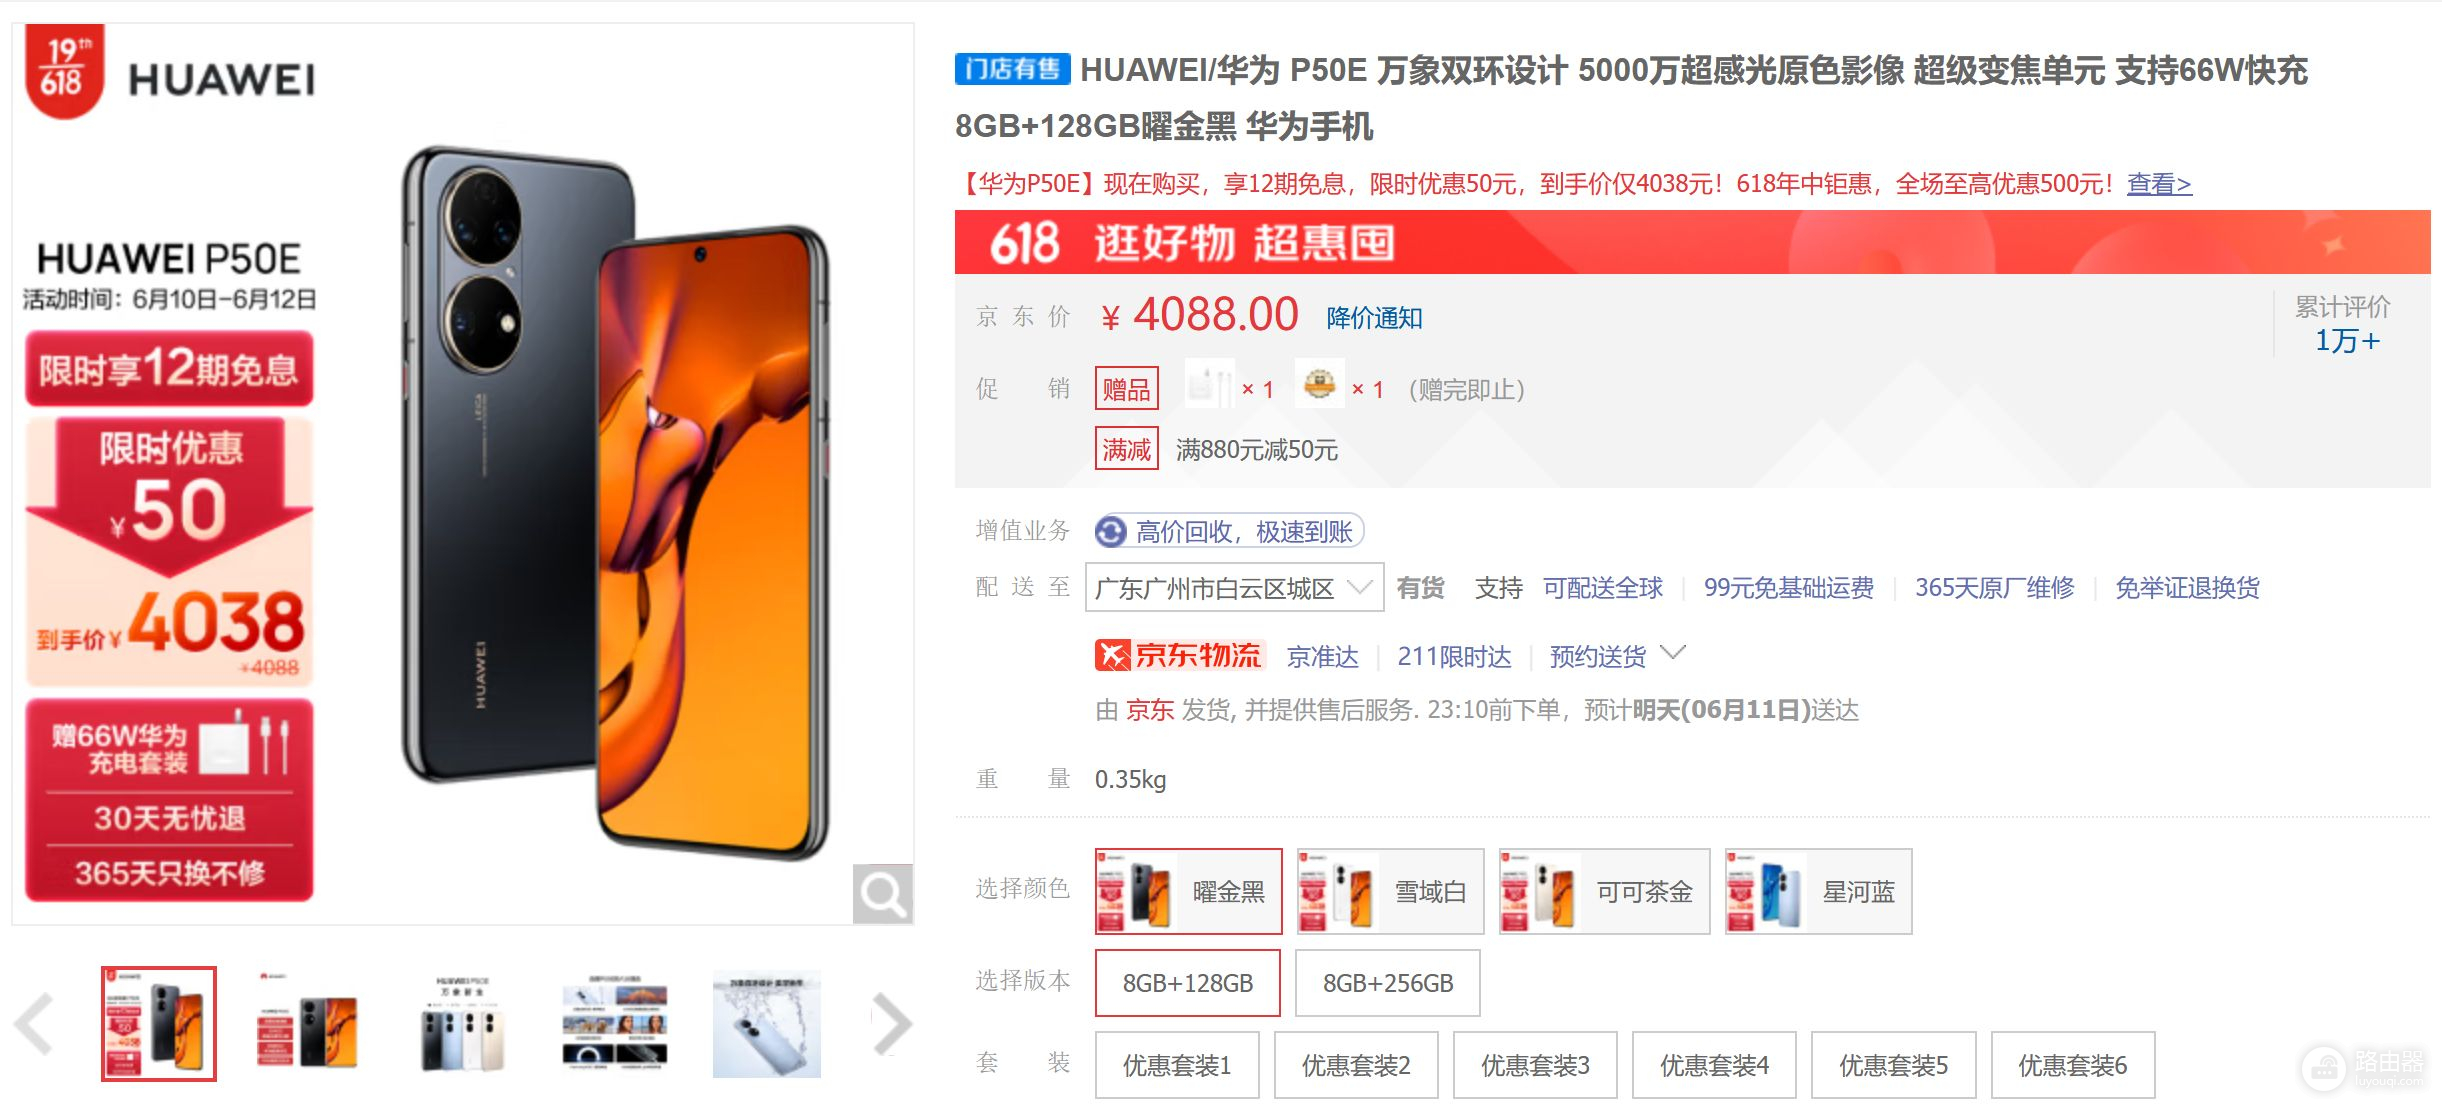 3500元价位的真香机型推荐3500元价位的真香机型推荐图